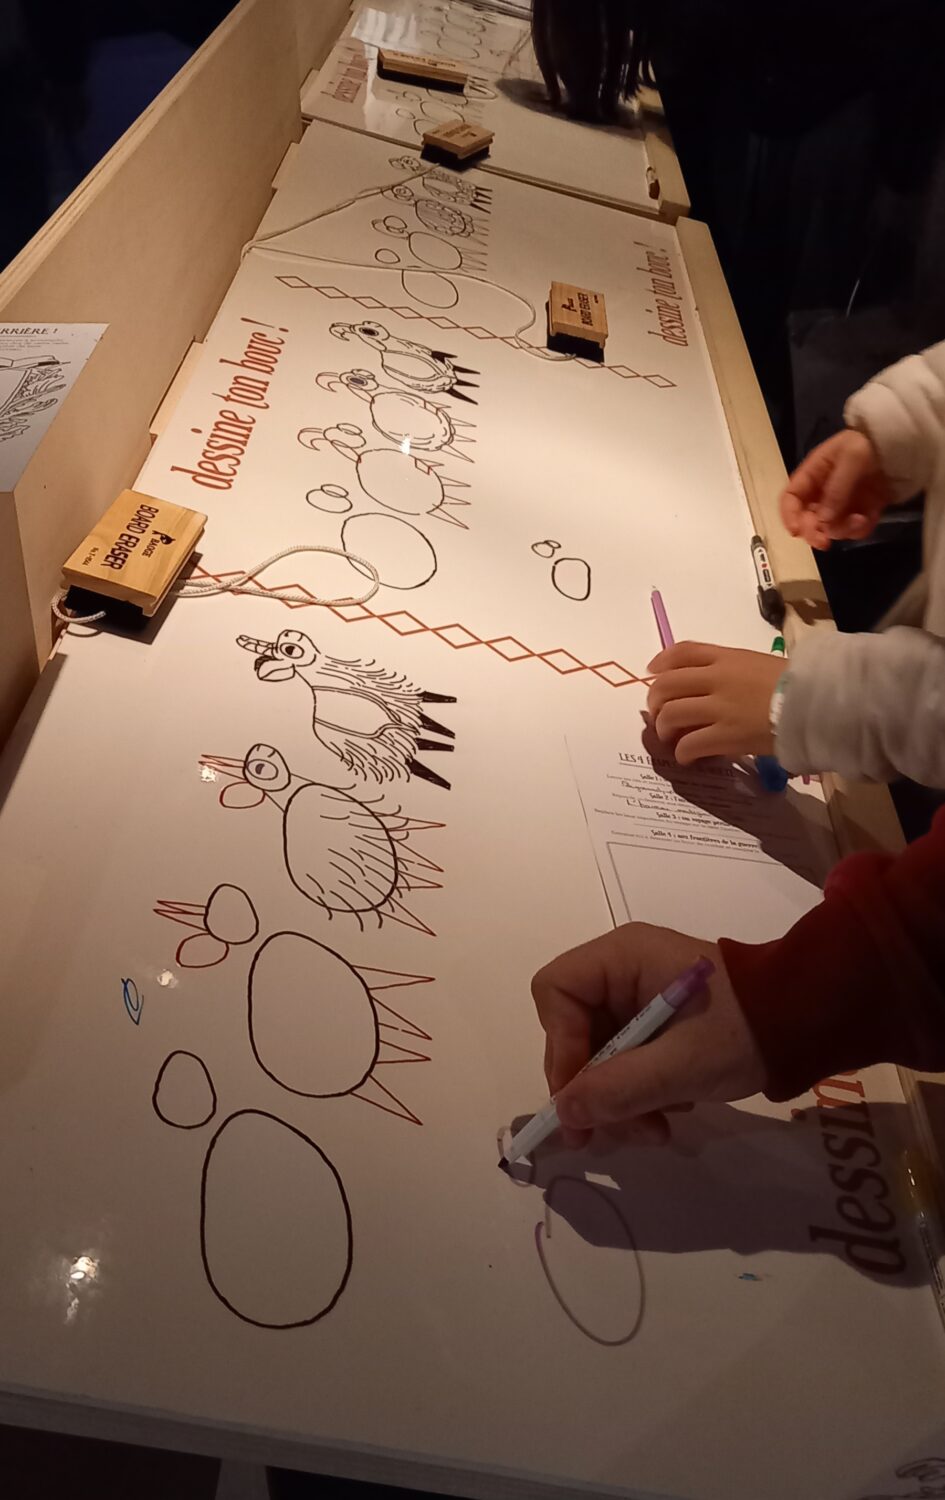 Une longue table avec des papiers blancs sur lequel sont dessinés des ronds qui se transforment en bouc, étape par étape de dessin expliquée, se trouve devant des enfants dont on ne voit que les mains qui dessinent lesdits boucs.